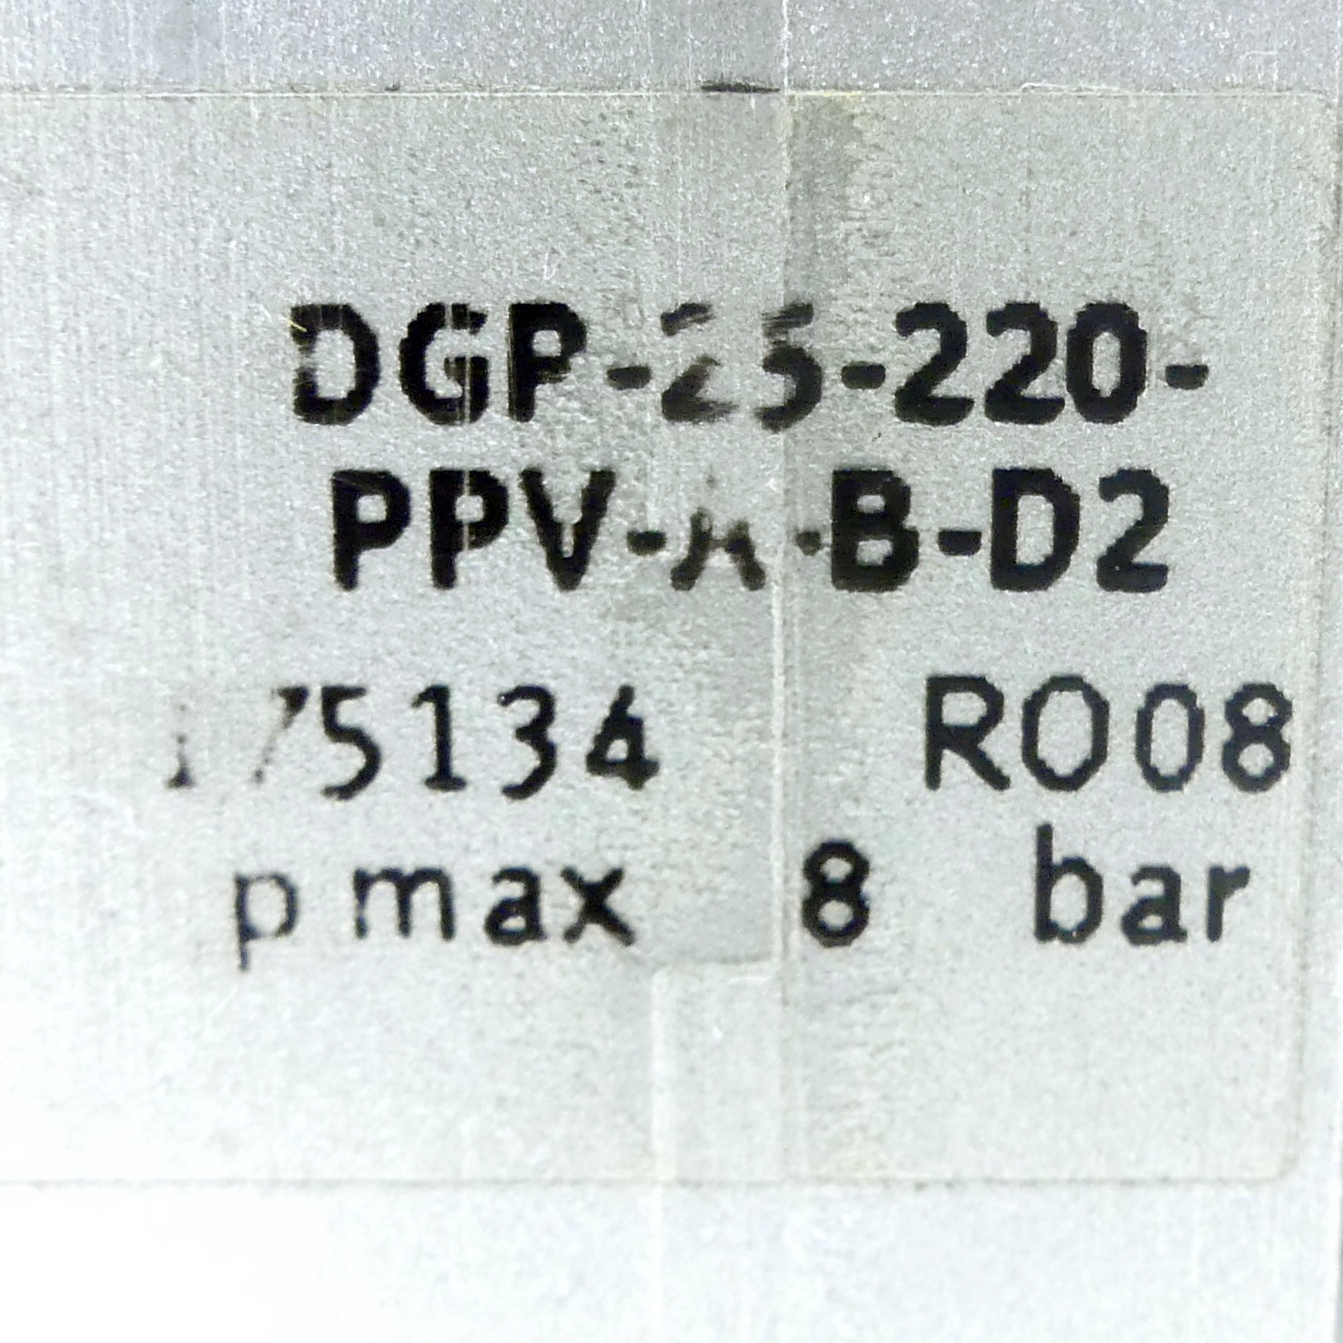 Linearantrieb DGP-25-220-PPV-A-B-D2 